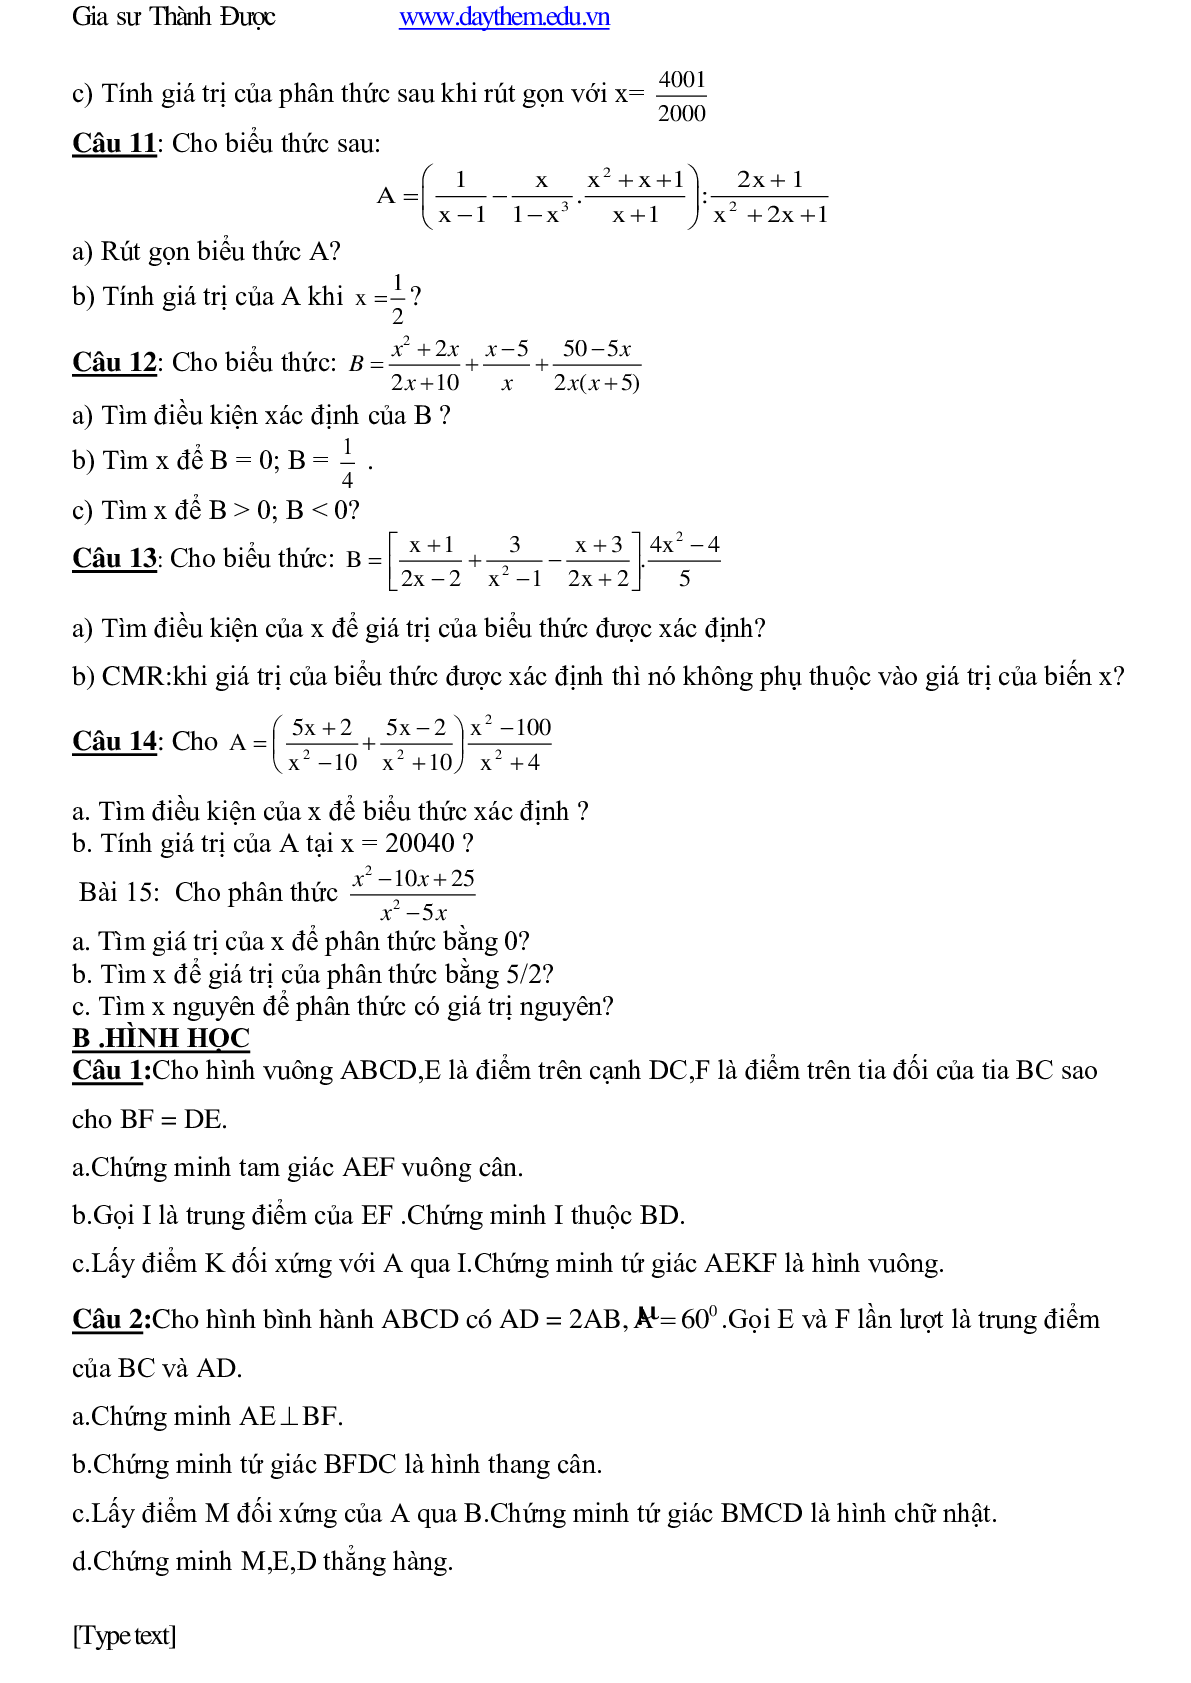 Bài tập ôn tập toán 8 học kì 1 cơ bản, nâng cao (trang 7)